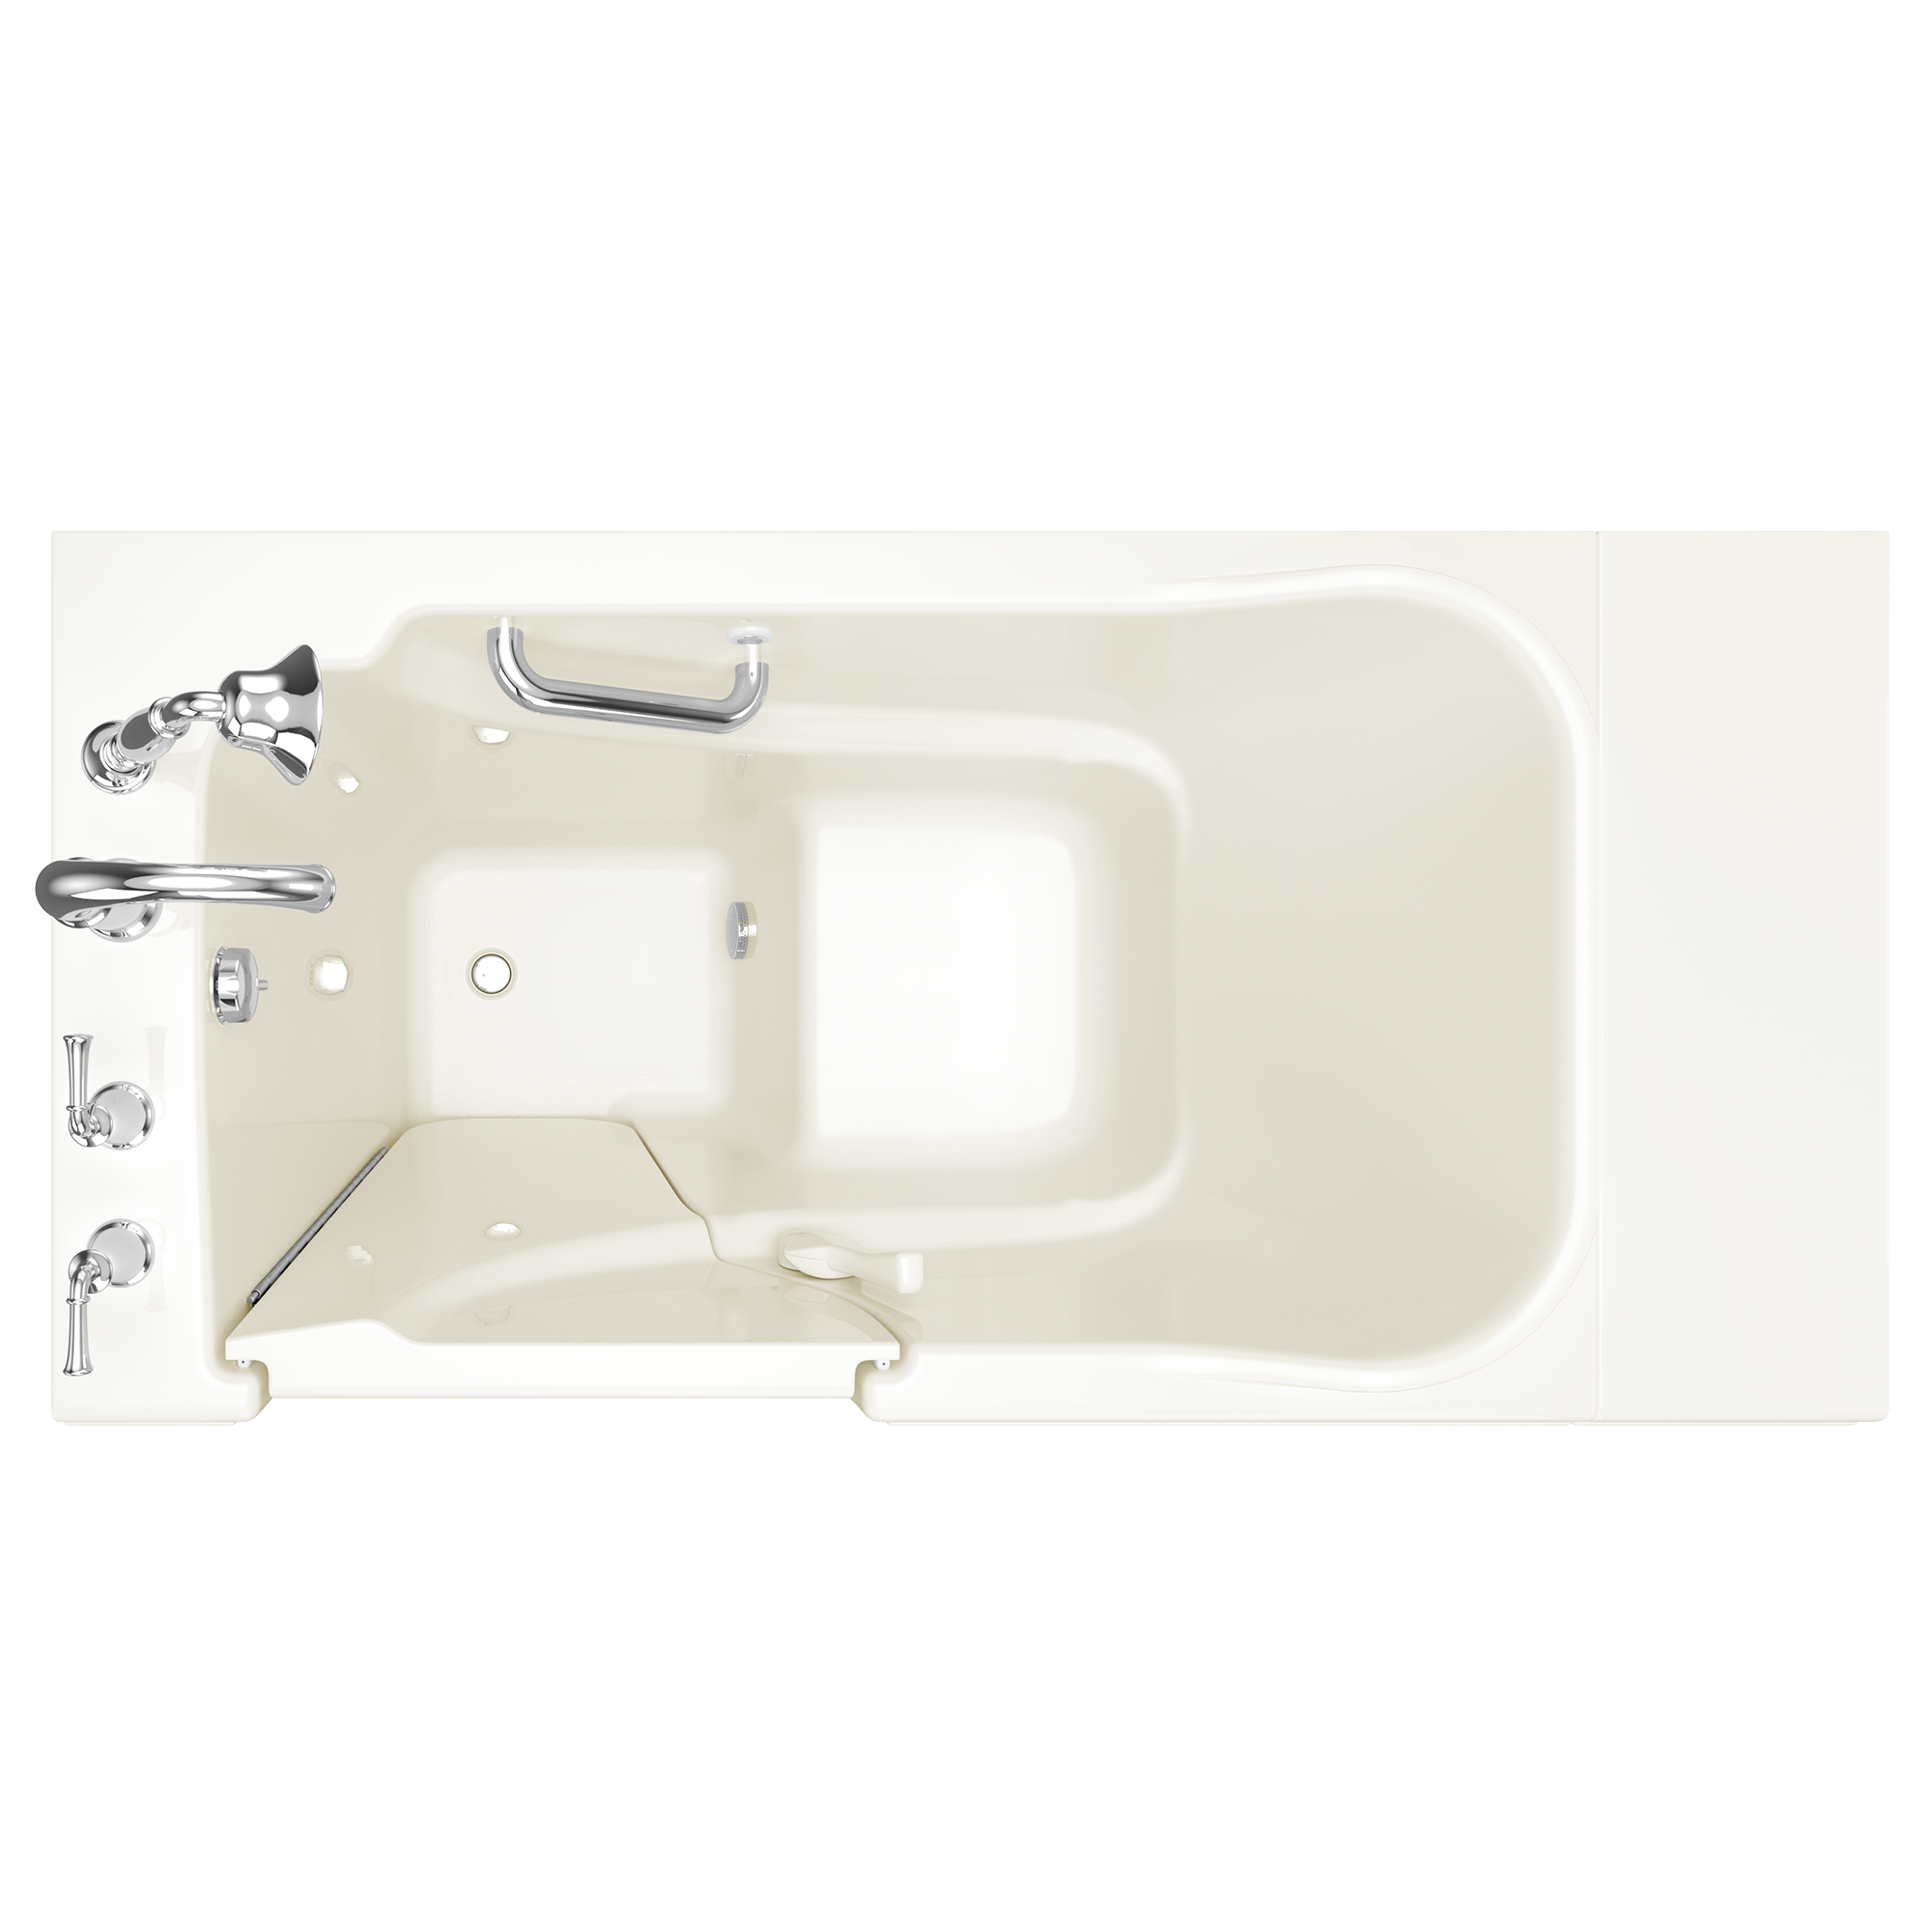 Gelcoat Value Series 30x52 Inch Soaking Walk-In Bathtub - Left Hand Door and Drain